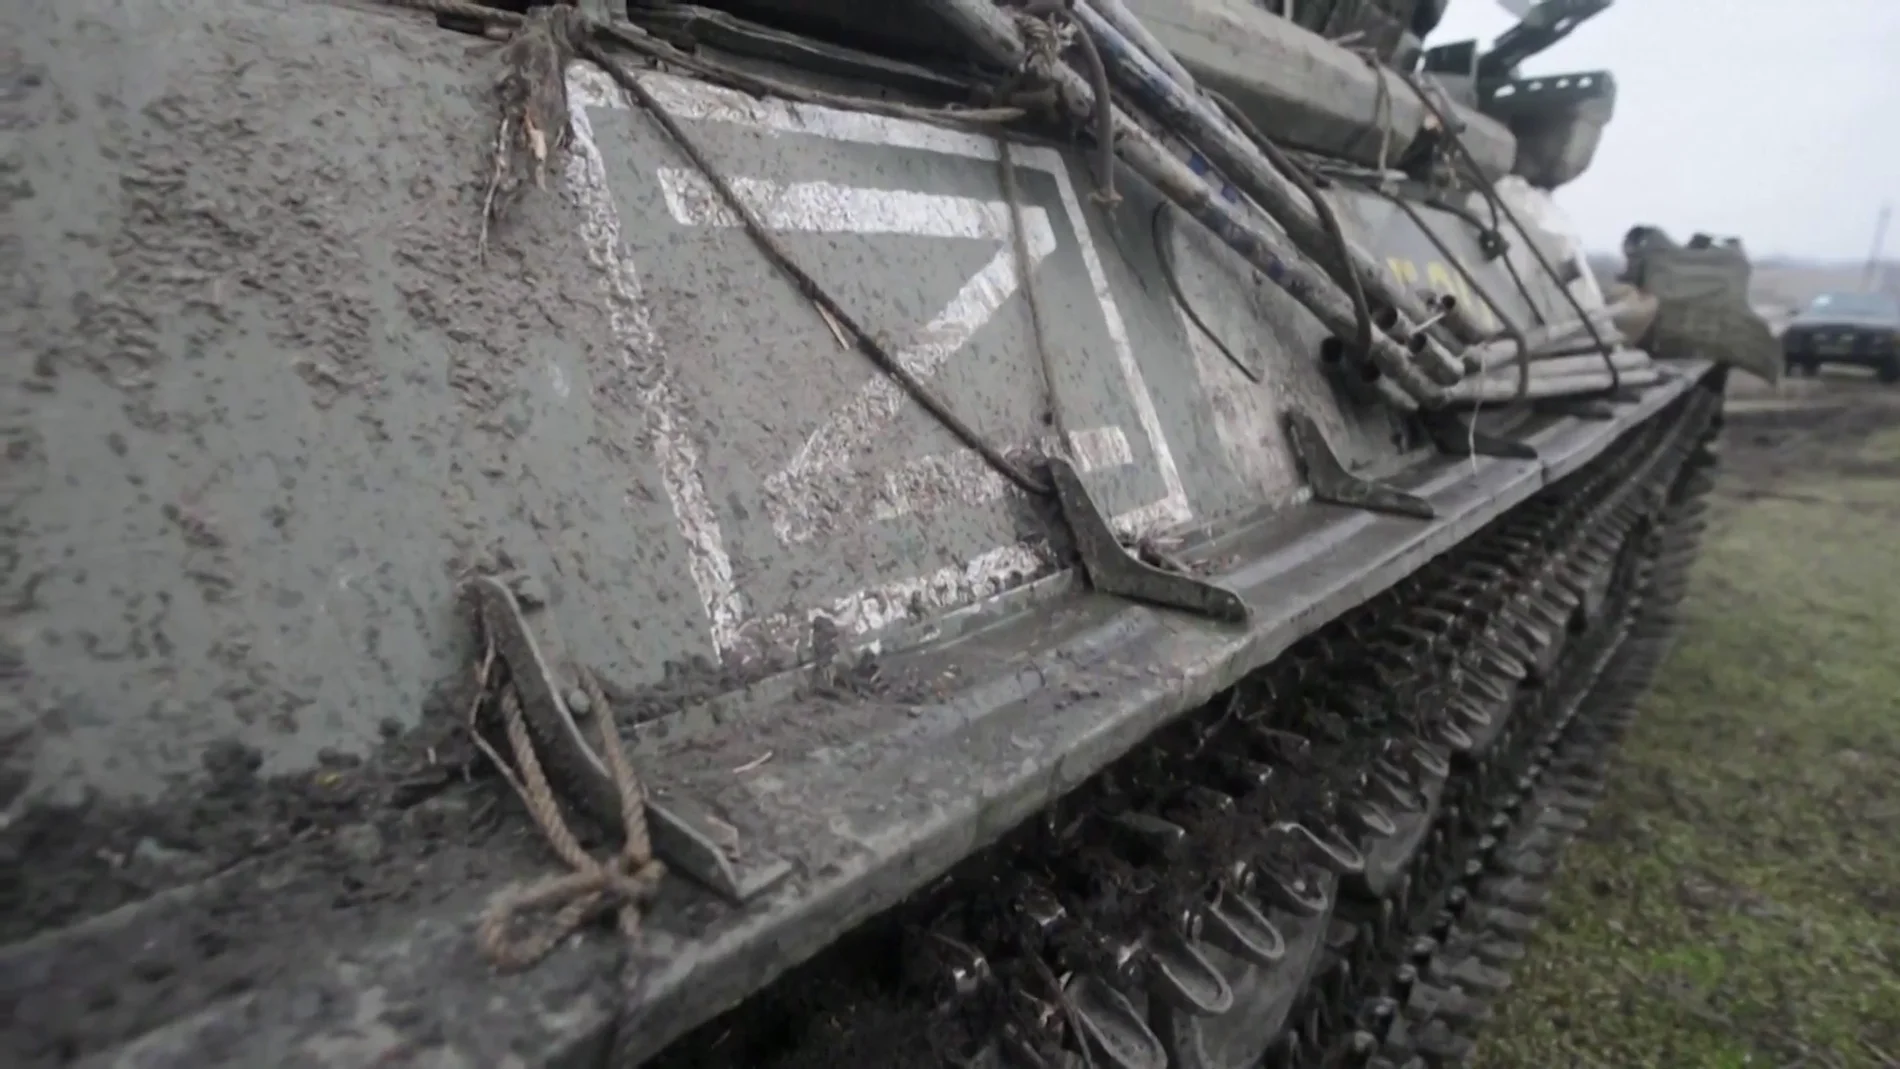 Qué significa la 'Z' de los uniformes y tanques rusos?